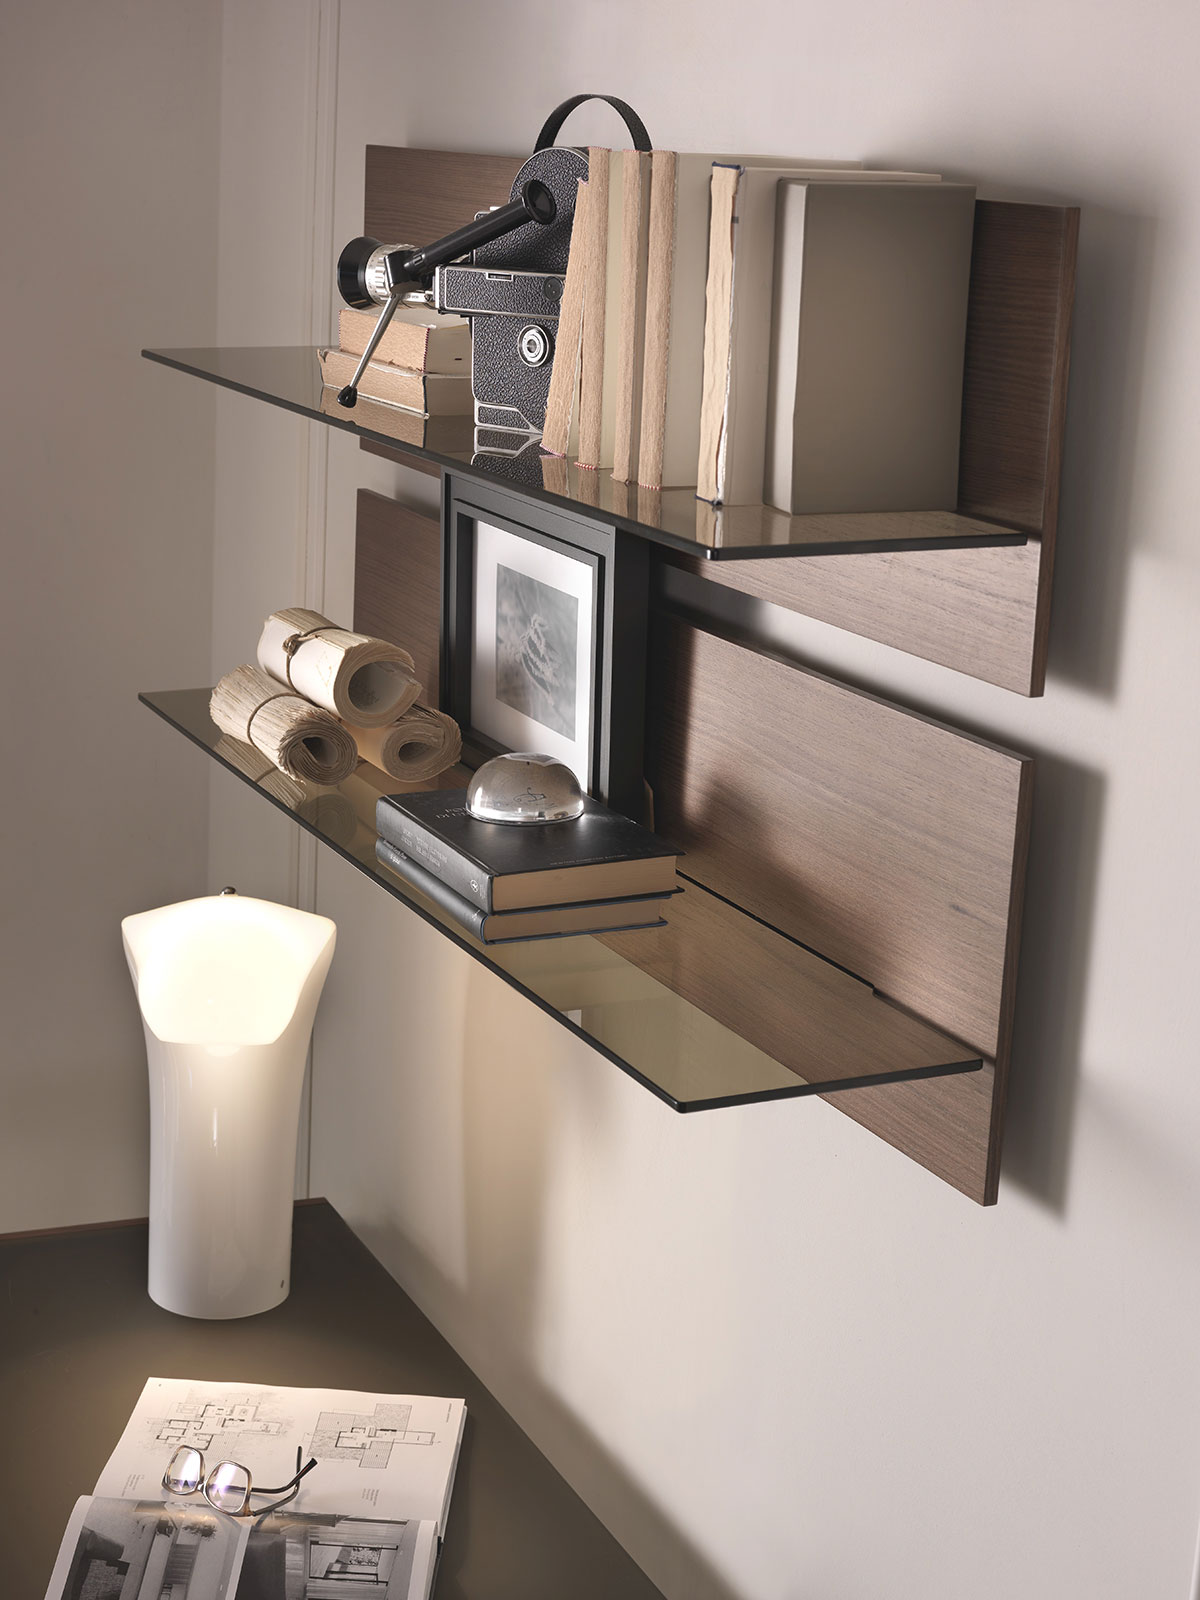 Etagère en bois et verre. Etagère design made in italy réalisée artisanalement. Vente en ligne de meubles design hauts de gamme avec livraison gratuite.